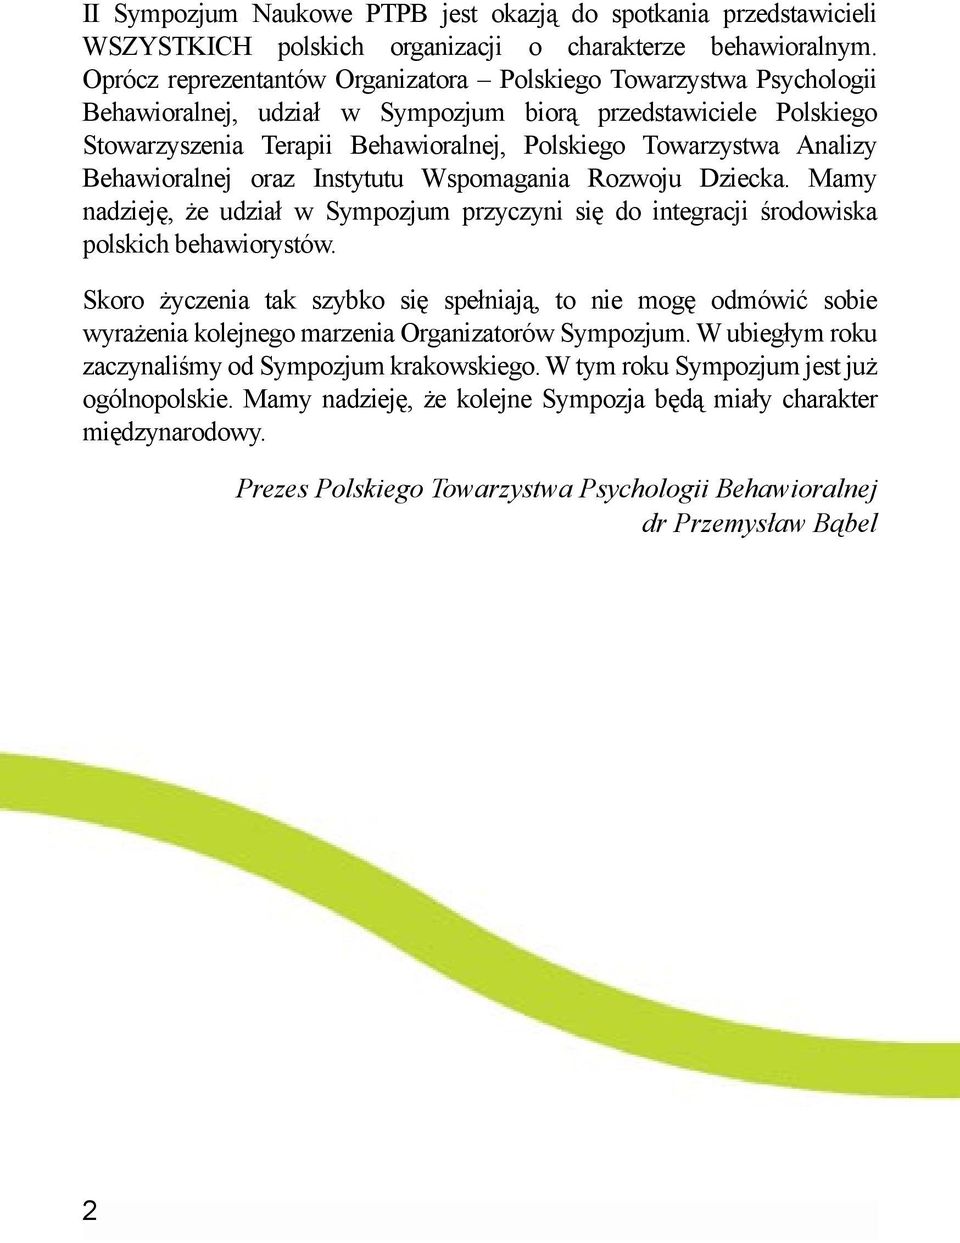 Analizy Behawioralnej oraz Instytutu Wspomagania Rozwoju Dziecka. Mamy nadzieję, że udział w Sympozjum przyczyni się do integracji środowiska polskich behawiorystów.